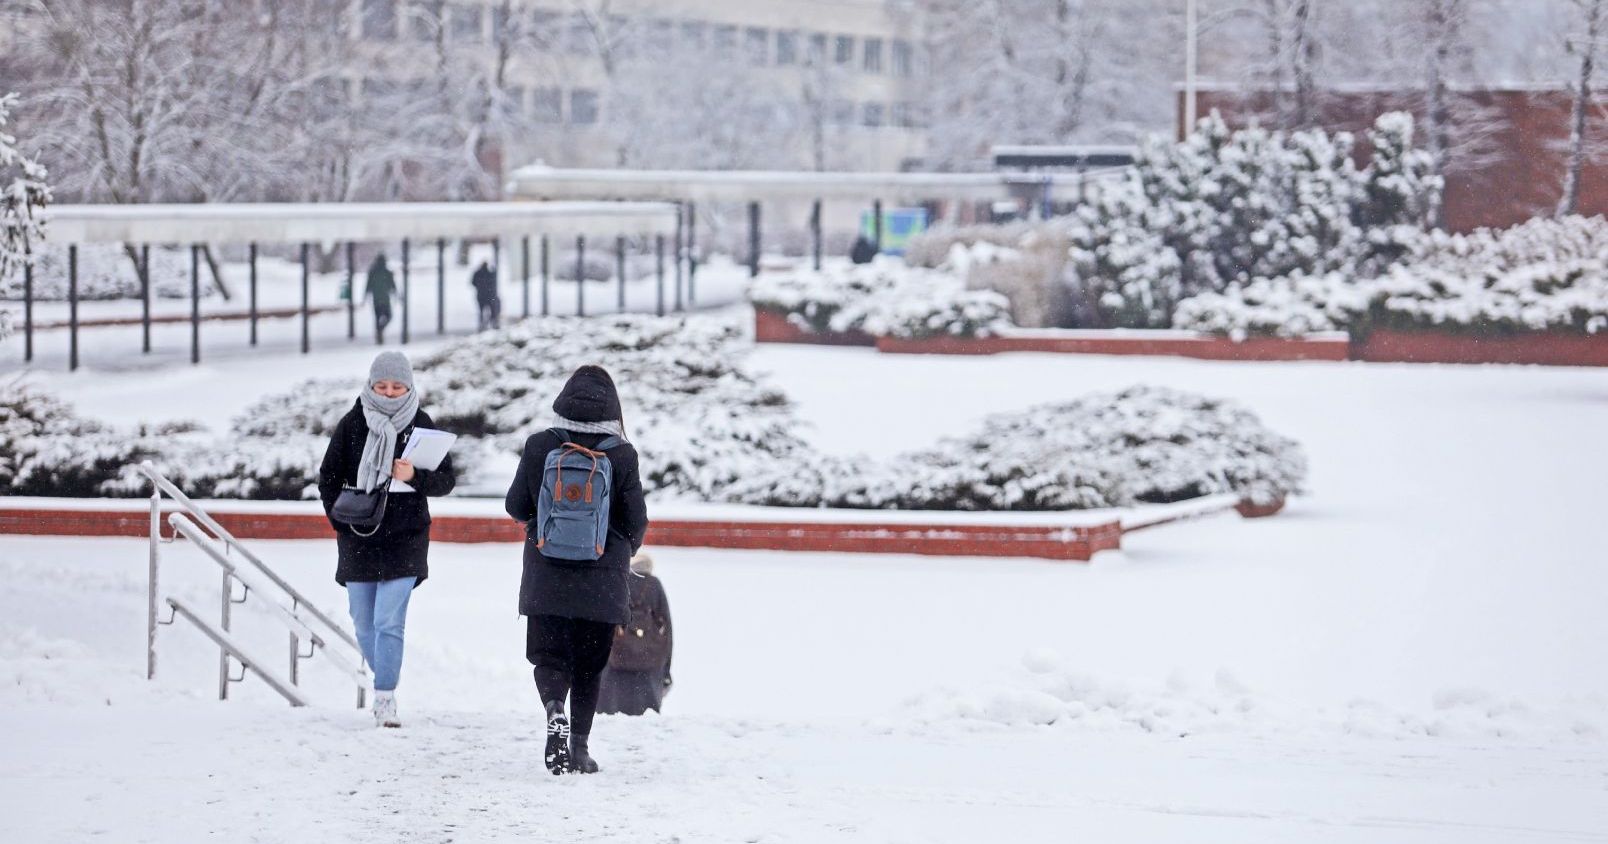  Zimowy krajobraz miasteczka uniwersyteckiego, śnieg, na zdjęciu dwie osoby idące po chodniku